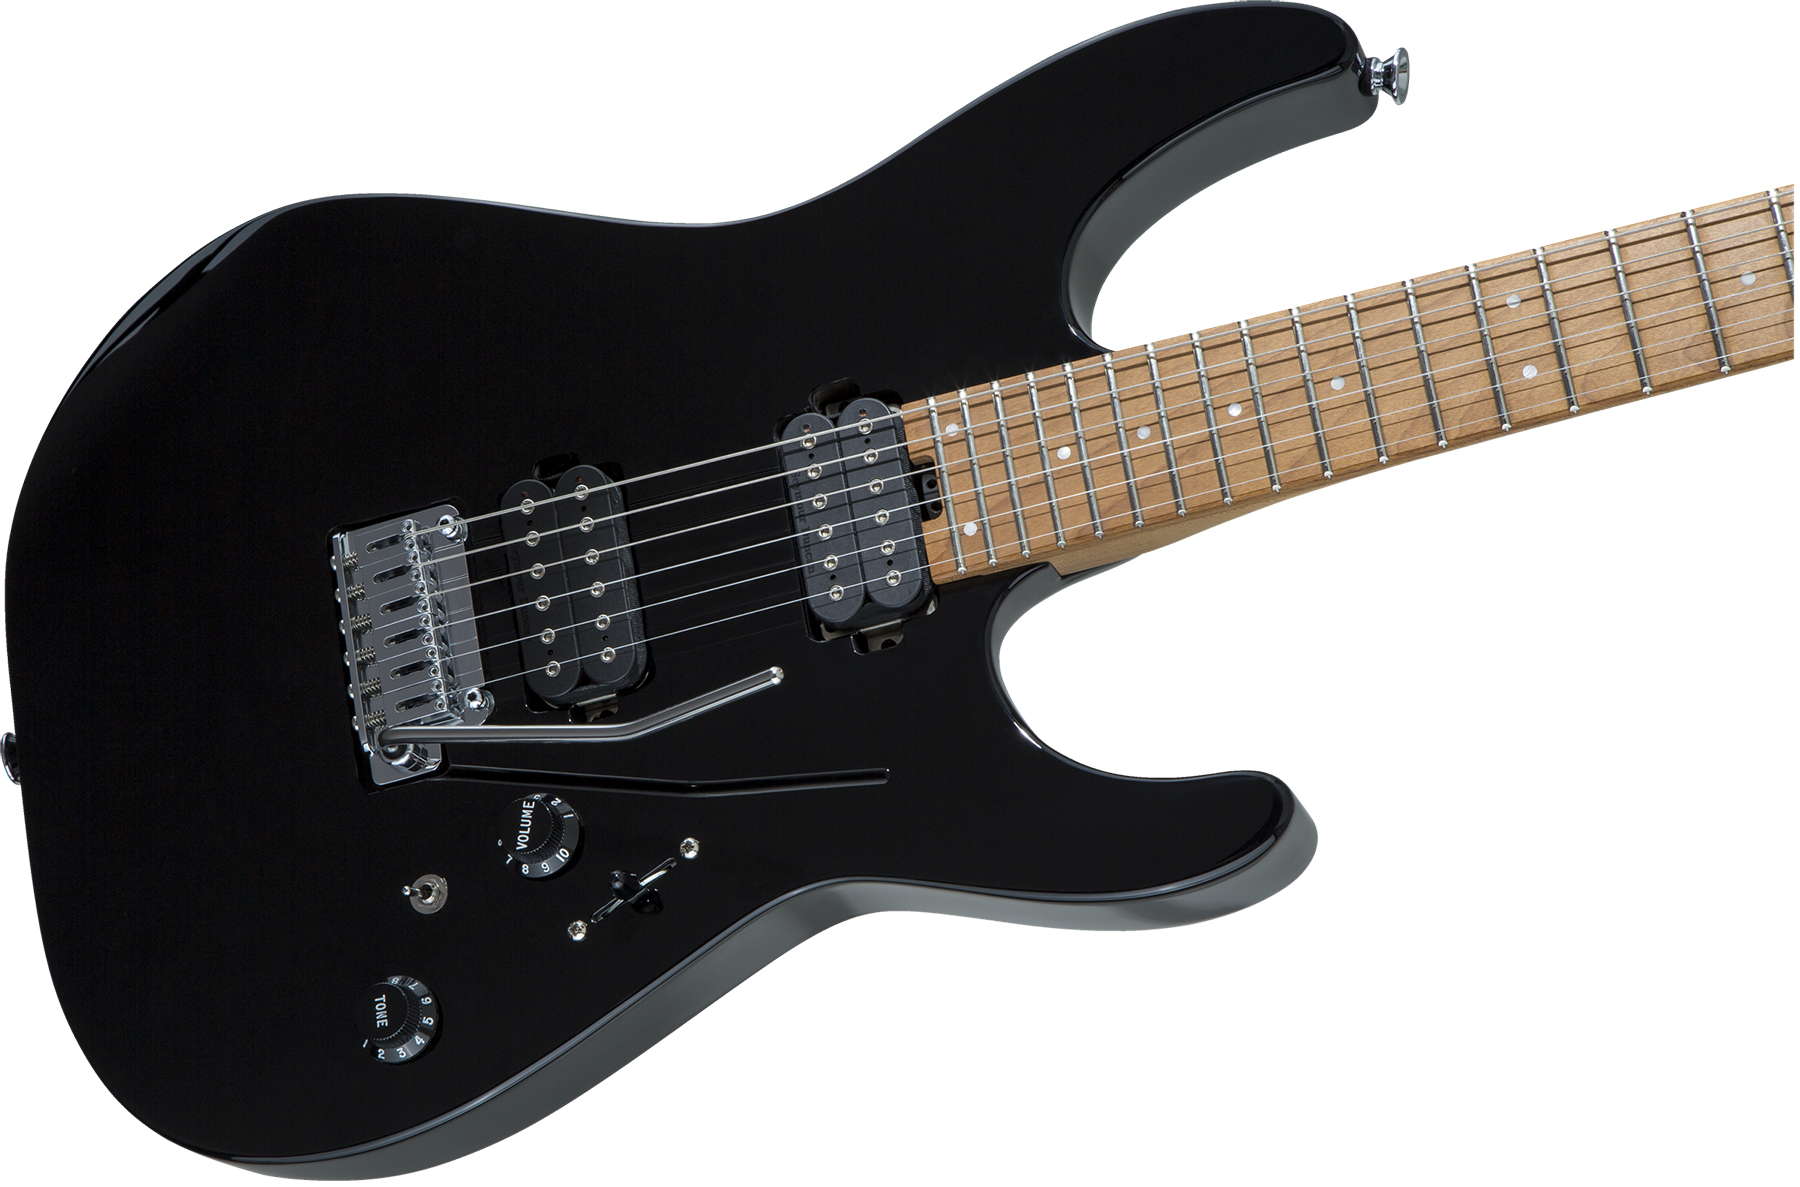 Charvel Pro-mod Dk24 Hh 2pt Cm Seymour Duncan Trem Mn - Black - Elektrische gitaar in Str-vorm - Variation 2